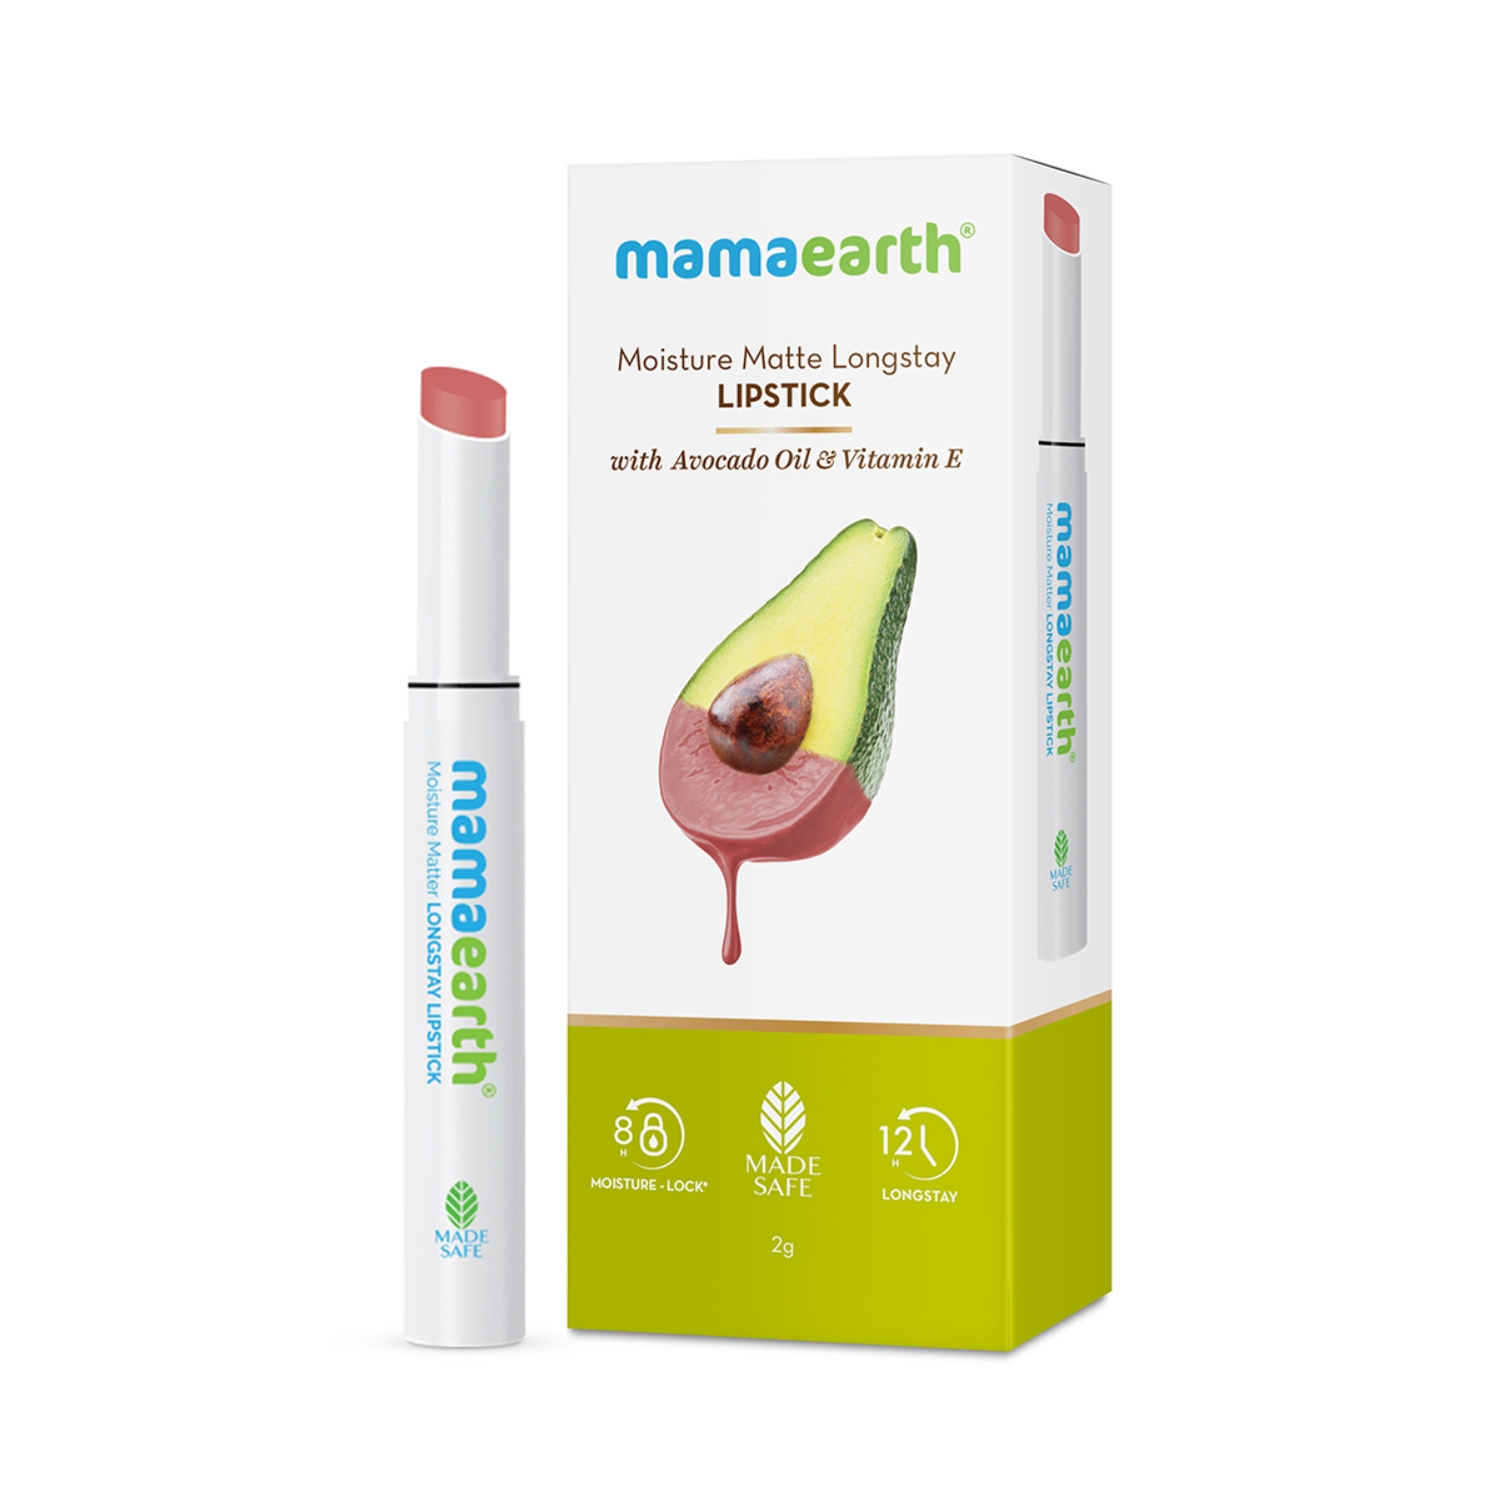 Mamaearth | Mamaearth Moisture Matte Longstay Lipstick With Avocado Oil & Vitamin E - 04 Cinnamon Nude (2g)